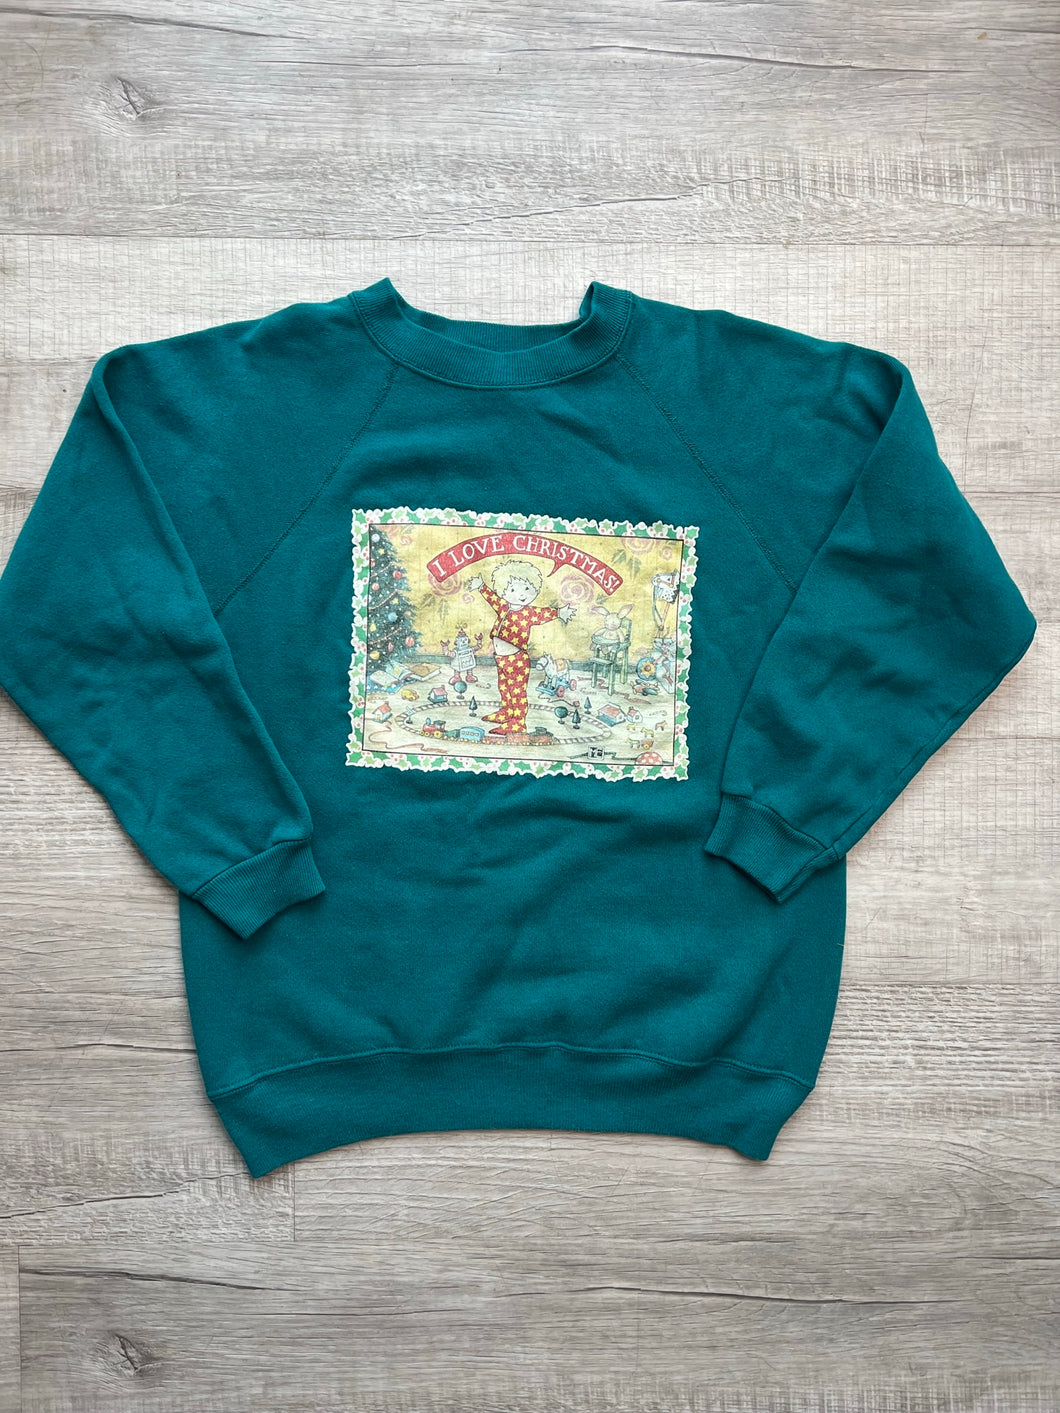 Vintage I Love Christmas Postcard Crewneck Sweatshirt